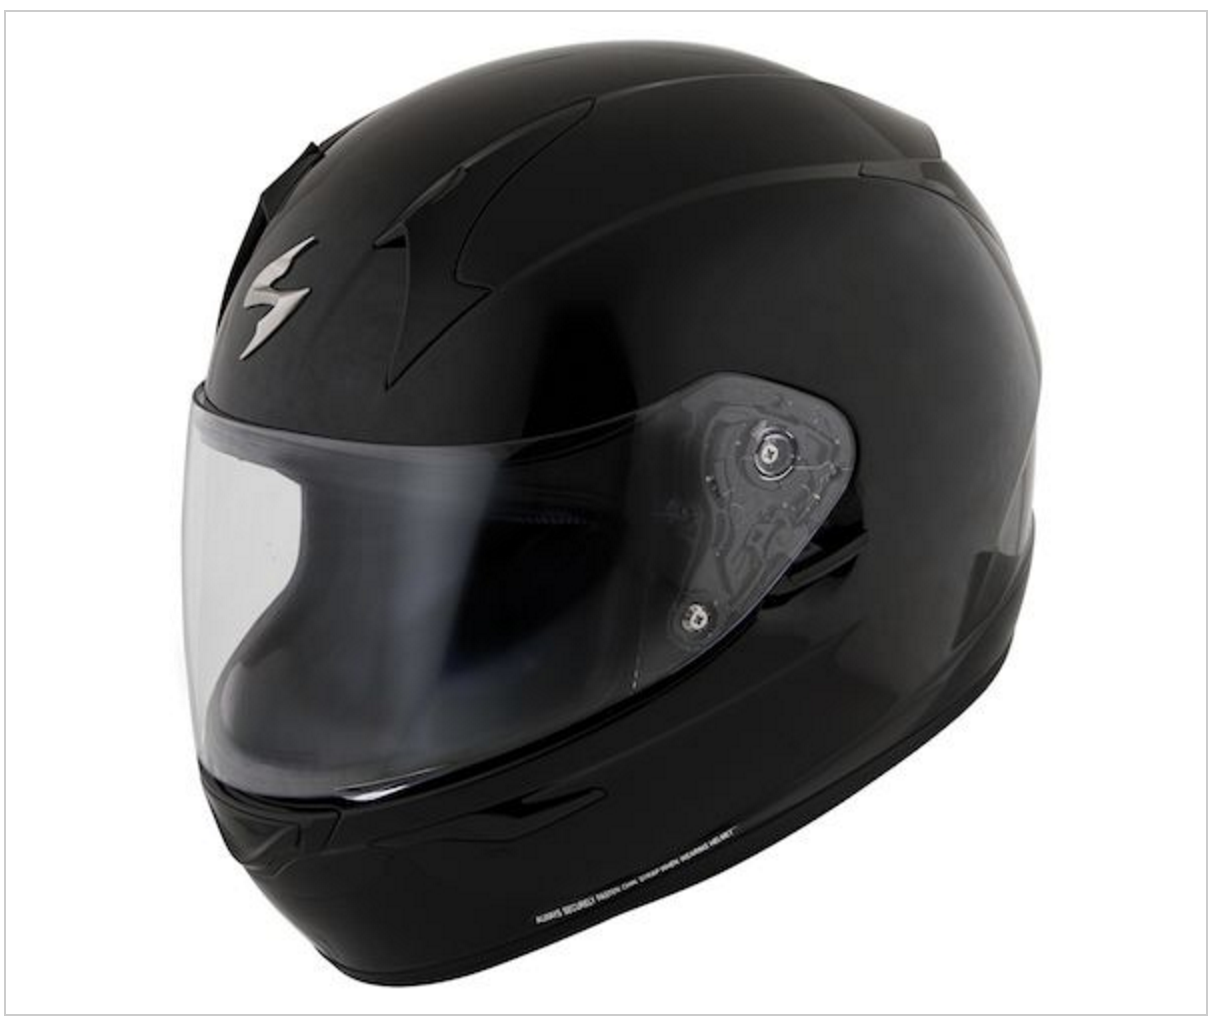 Scorpion EXO-R410 Helmet